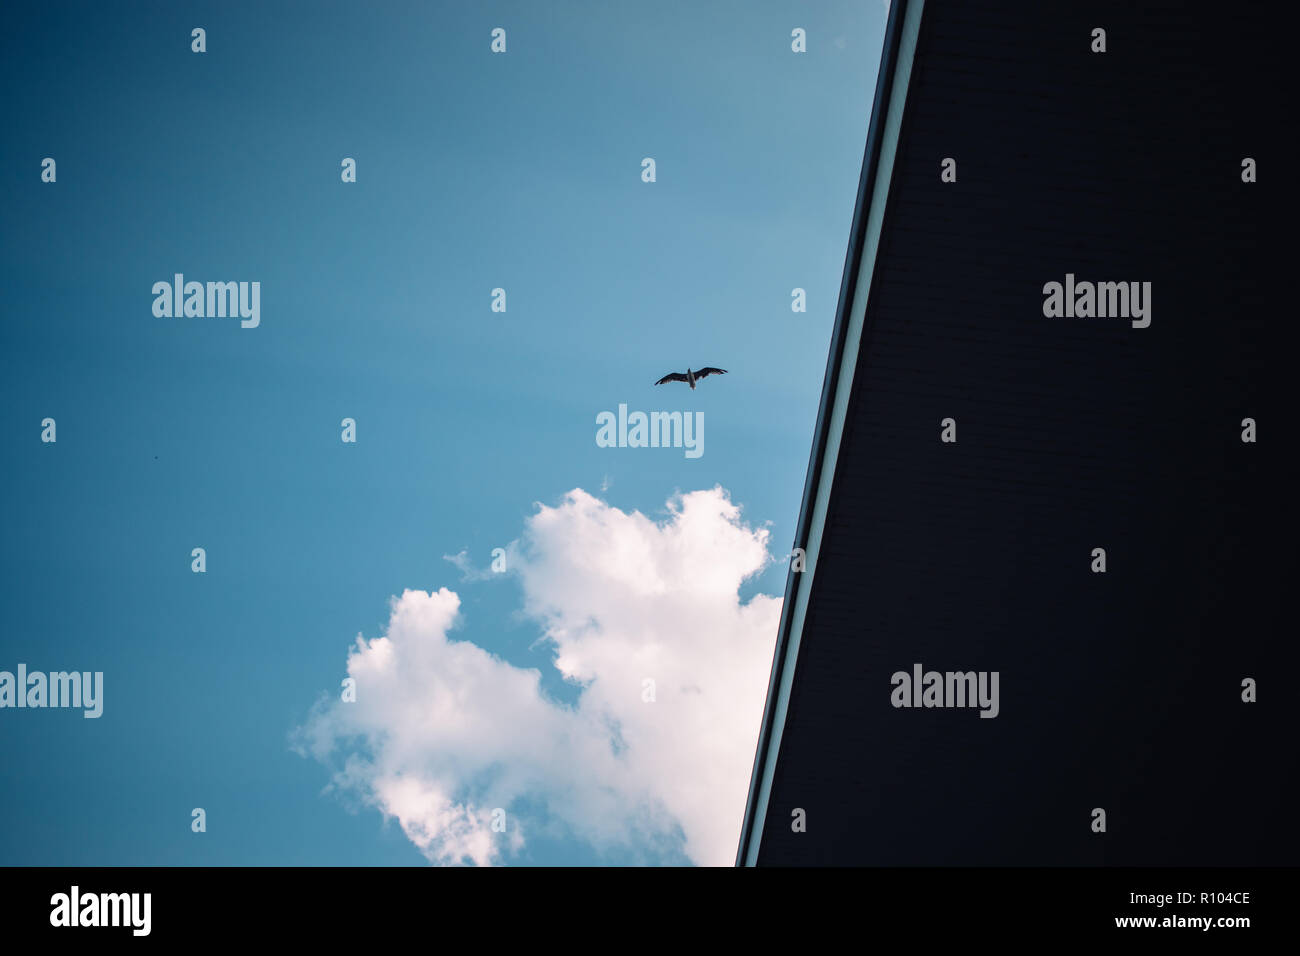 Möwe Flug gegen Licht blauer Himmel und dunklen Gebäude, Ansicht von unten. Silhouette eines fliegenden Vogel. Stockfoto